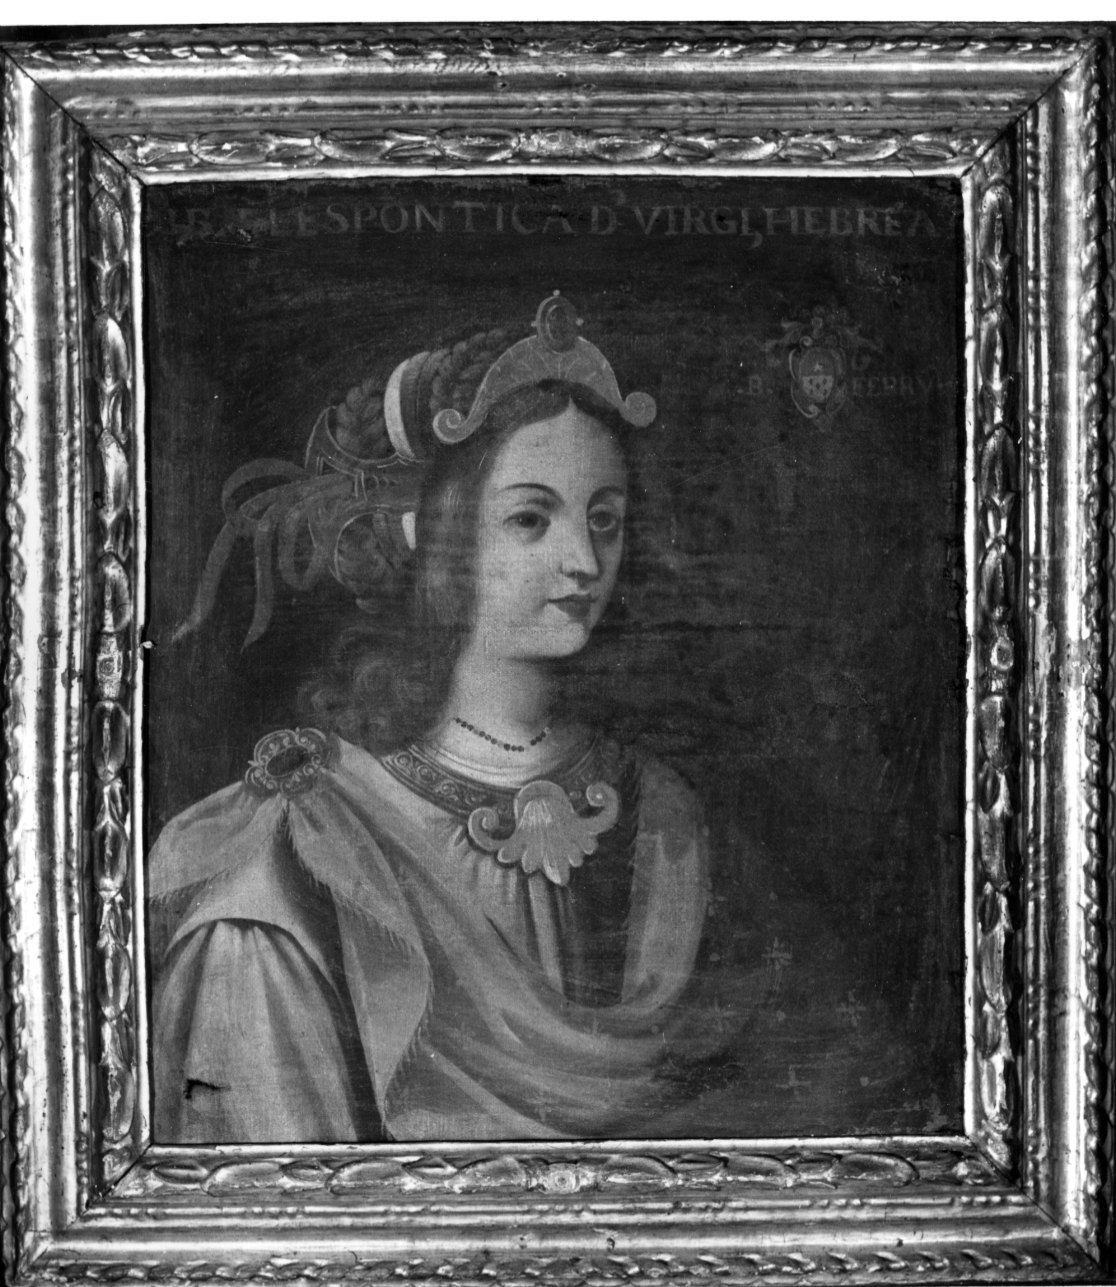 Sibilla Ellespontica (dipinto) - ambito piemontese (fine/inizio secc. XVI/ XVII)